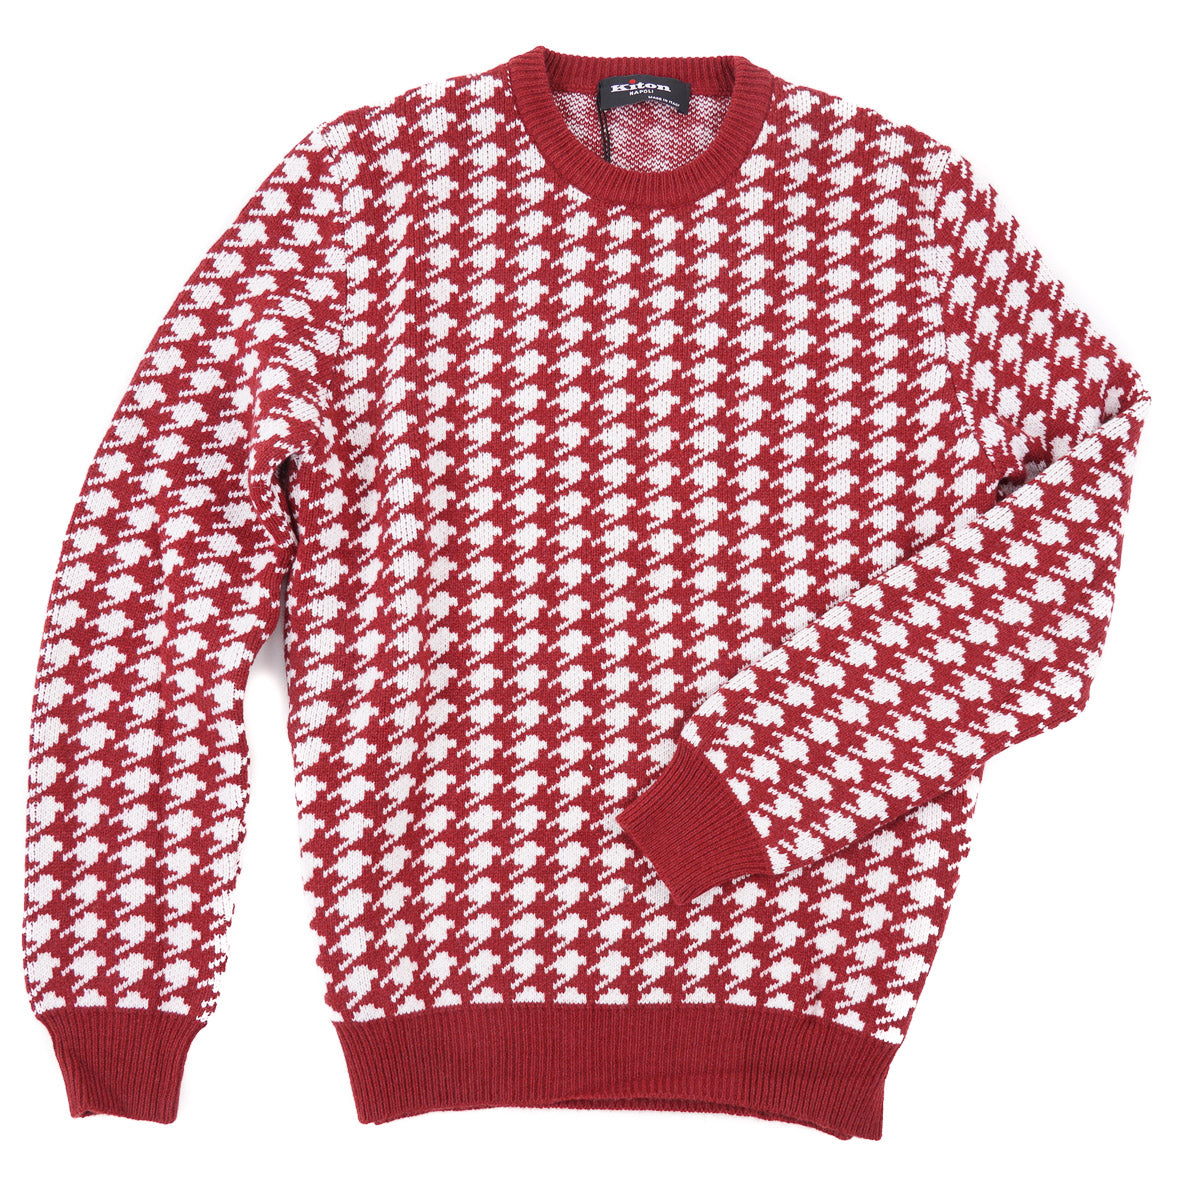 Kiton Thick Knit Cashmere Sweater